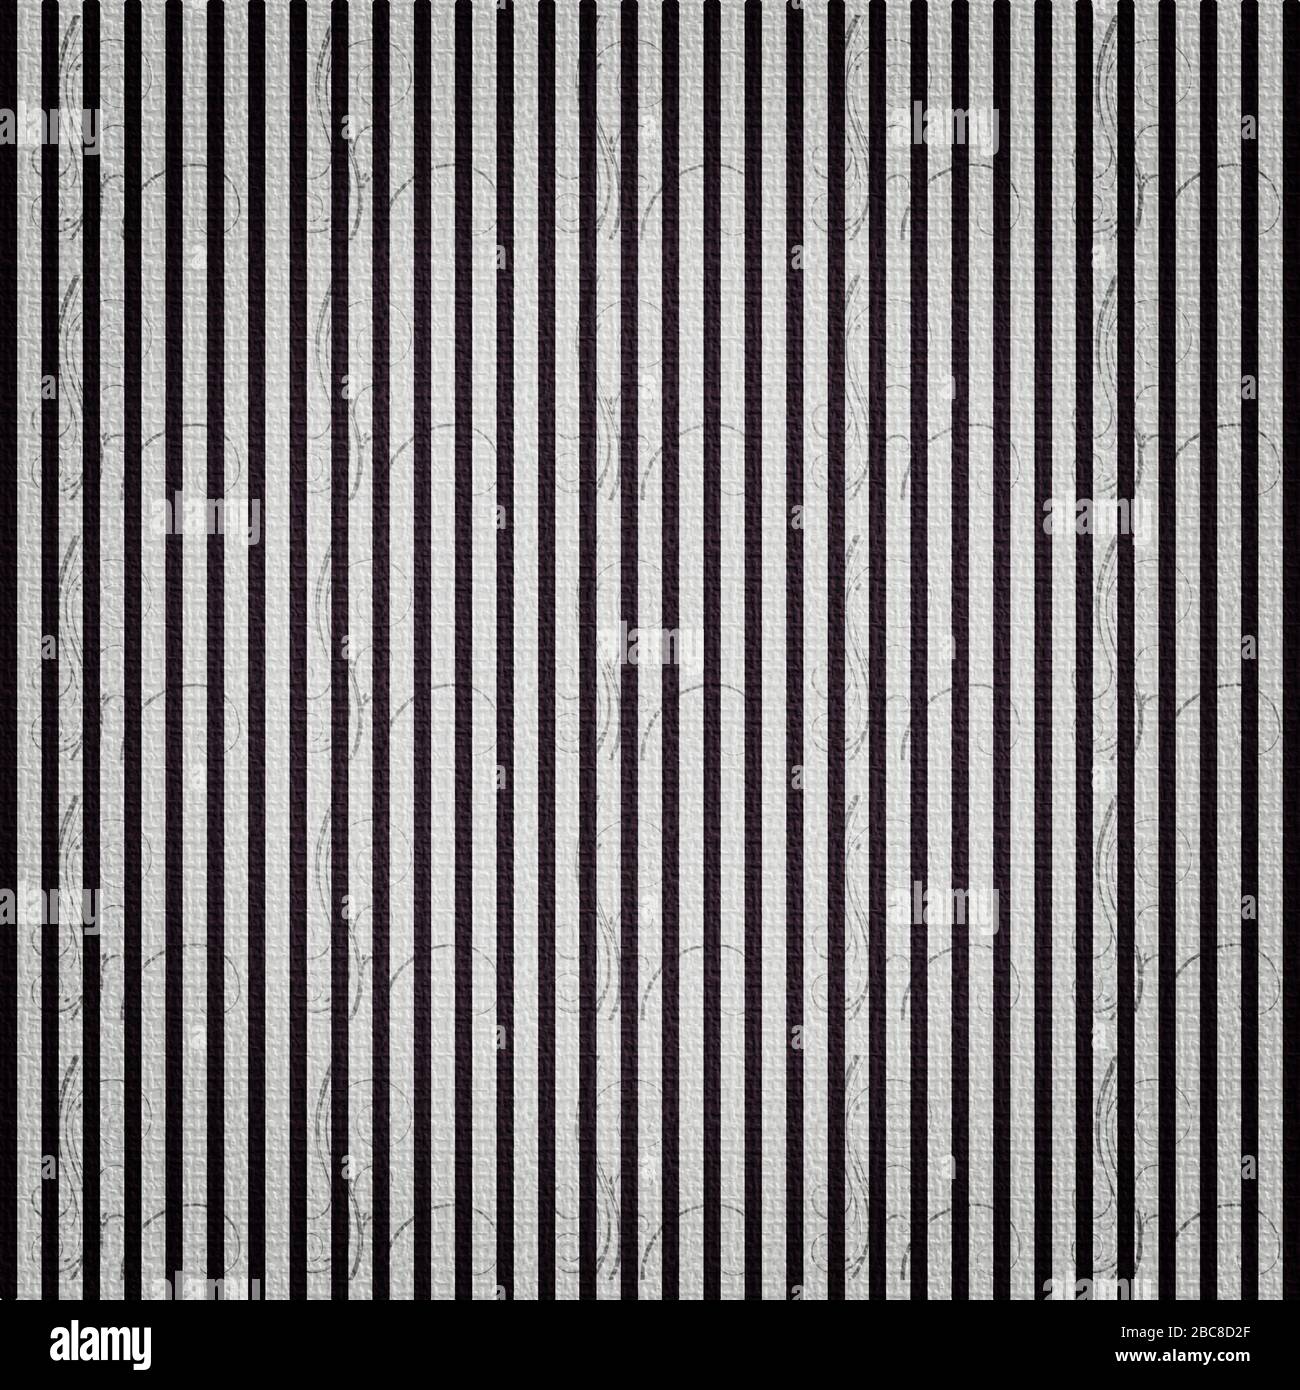 Motif vintage avec bandes et fonds de vignette en lignes verticales. papier numérique 12x12 pour la conception graphique et les projets. Banque D'Images